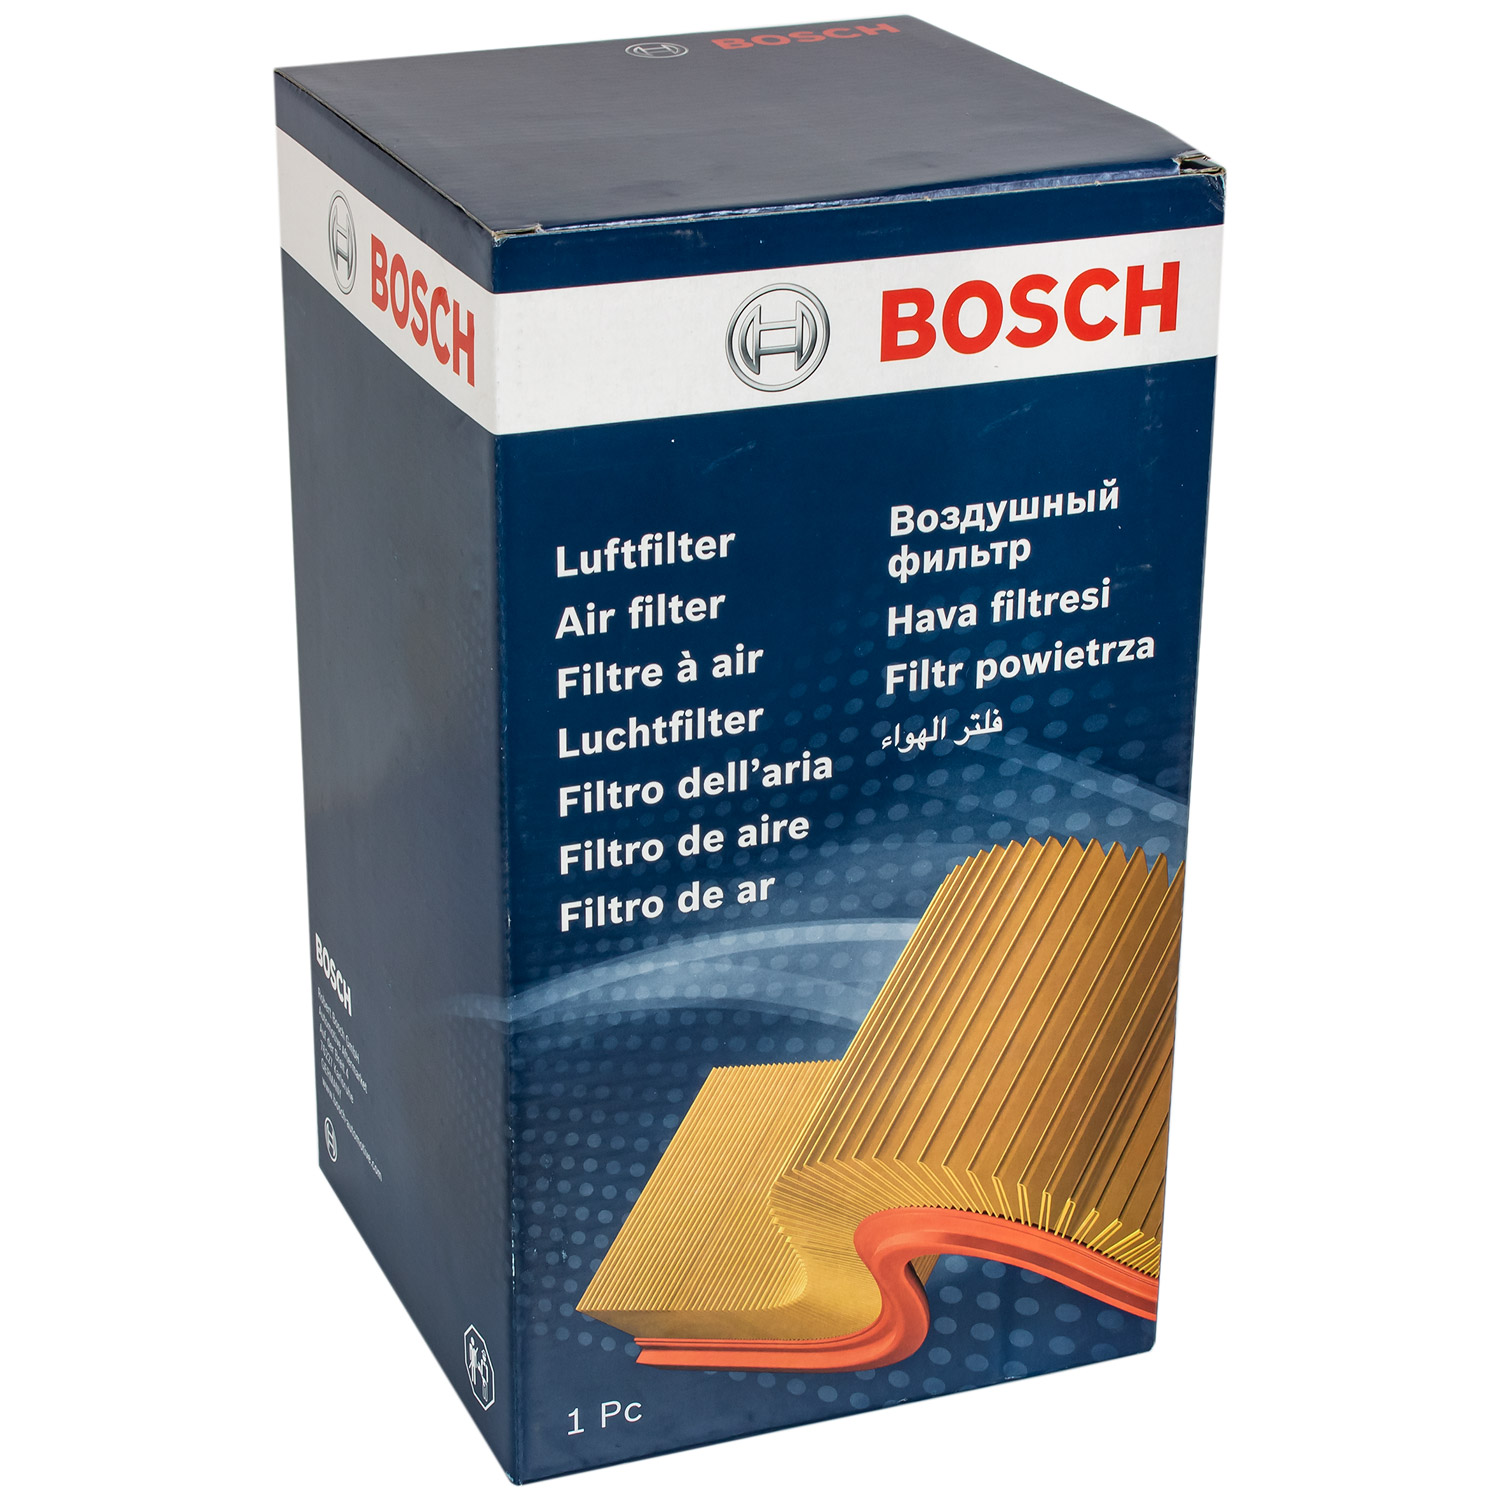 BOSCH Luftfilter für Fiat Ducato Pritsche/Fahrgestell 244 2.8 JTD 2.3 230 230L